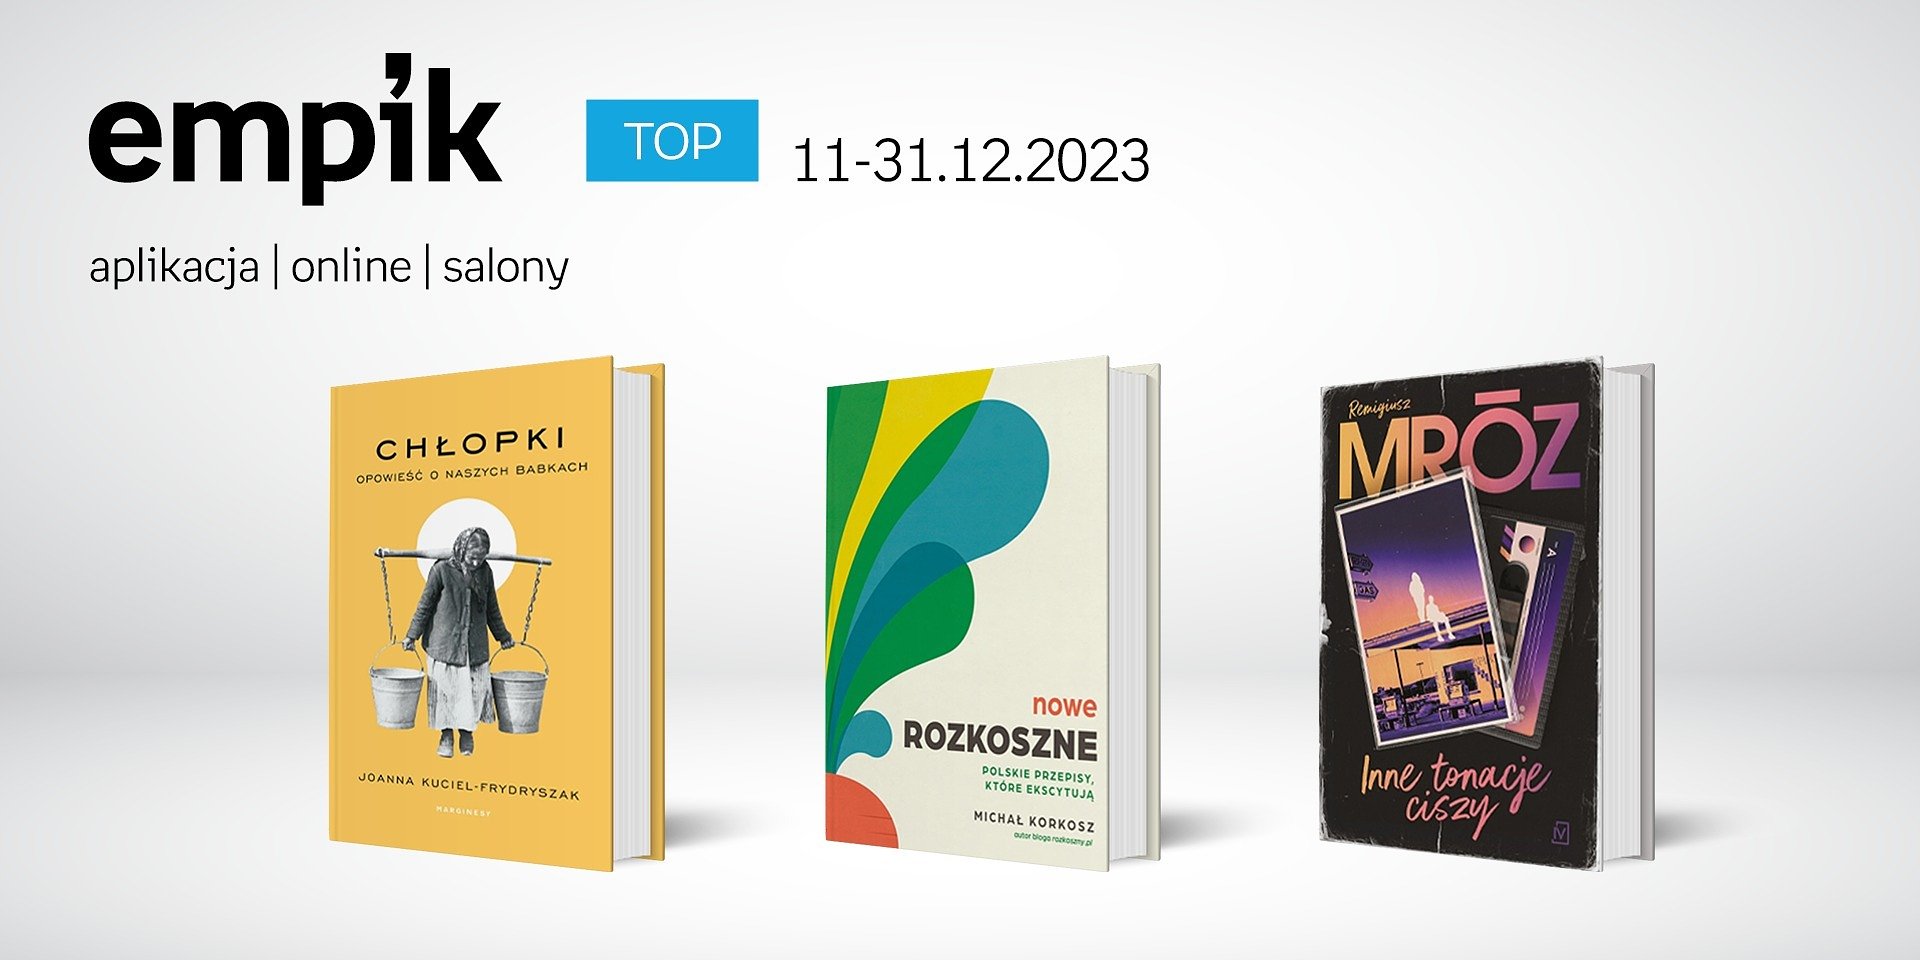 Książkowe listy bestsellerów w Empiku za okres 11-31.12.2023 r.